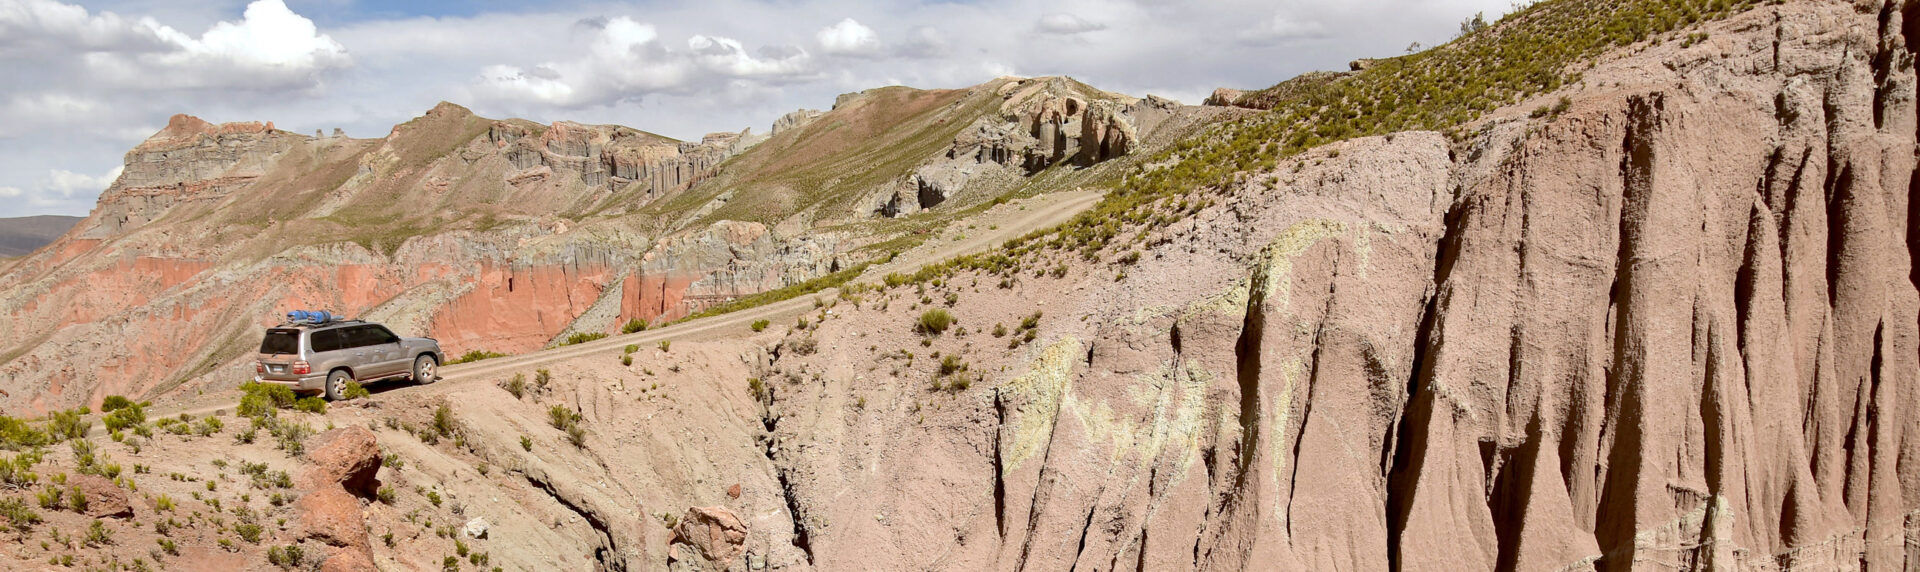 Bolivie Cordillera Lipez Uyuni2B